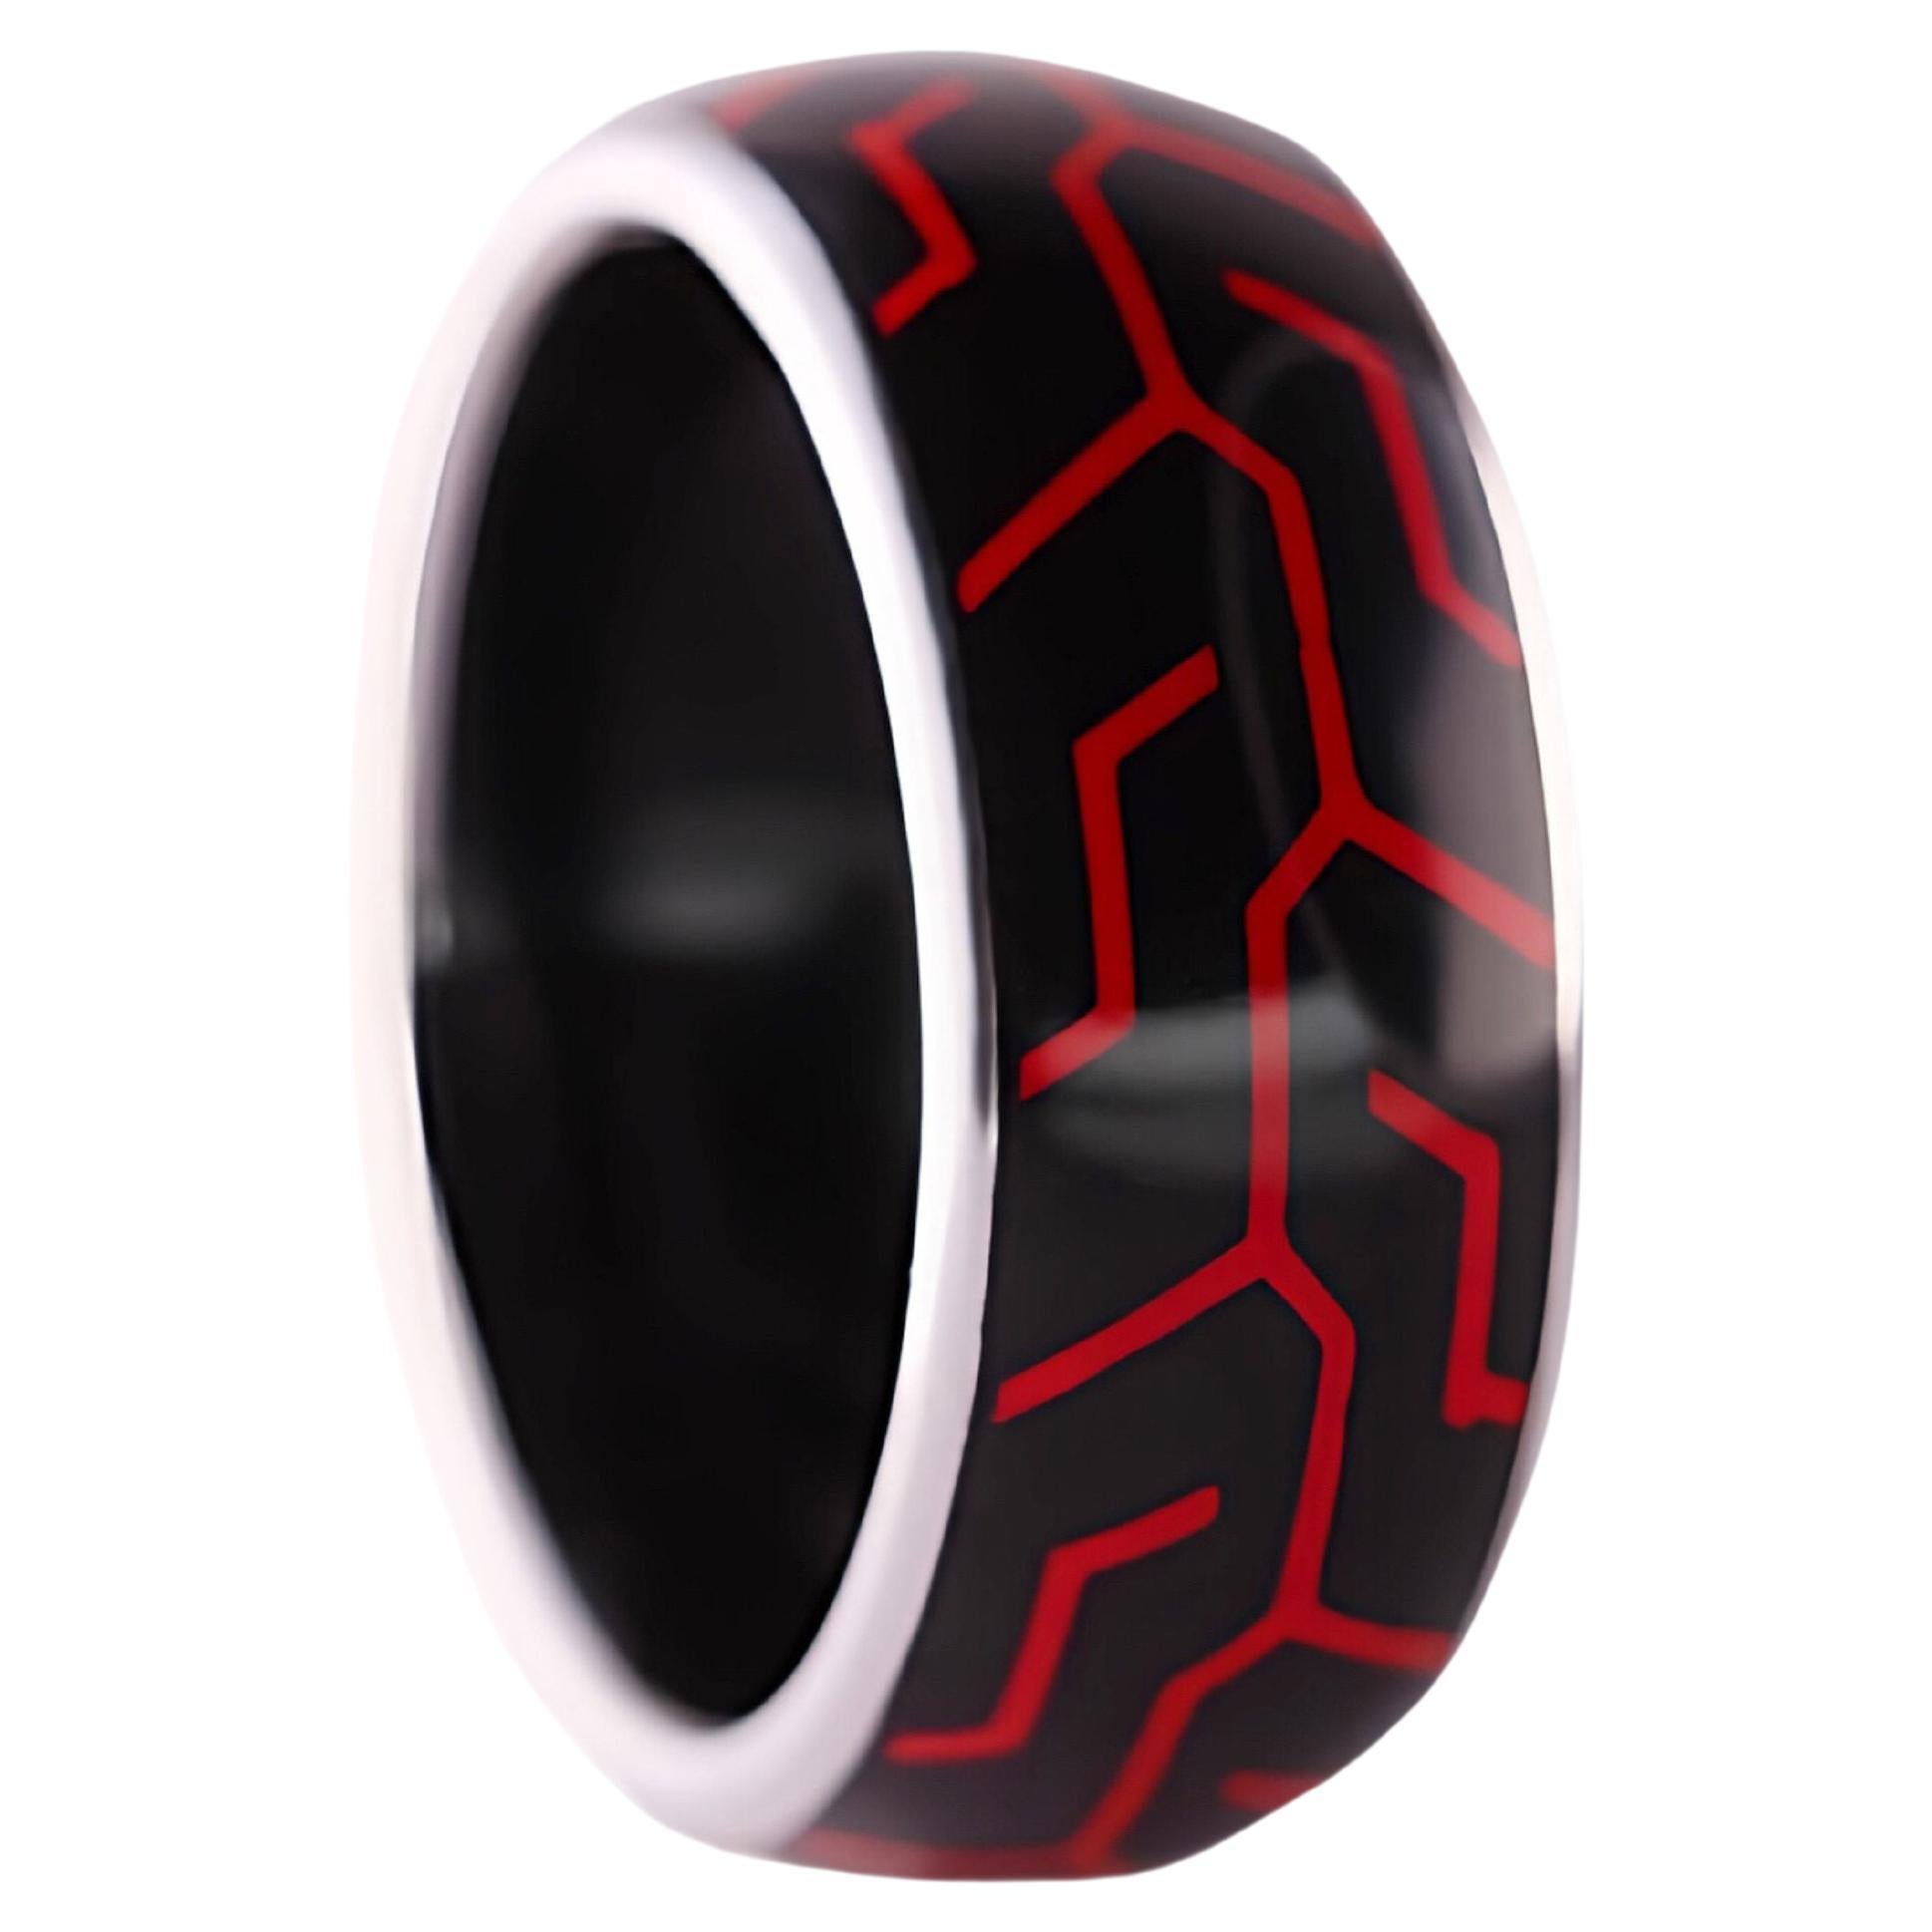 Racing Spirit: Platinum & High-Tech Red-Black Ceramic Men's Ring